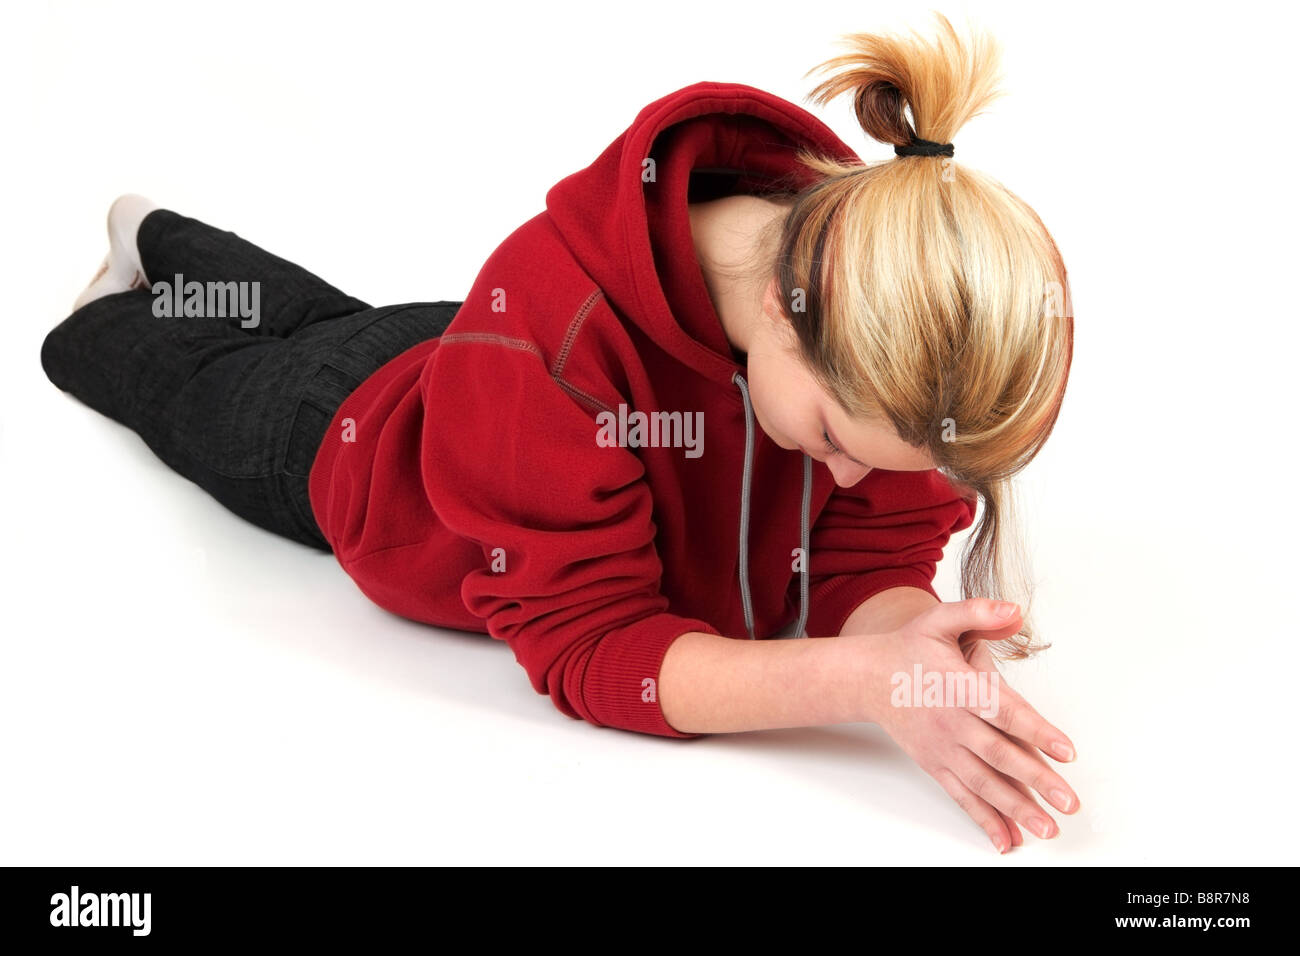 Porträt der jungen Frau in rotes Sweatshirt auf Boden liegend, Studio gedreht Stockfoto